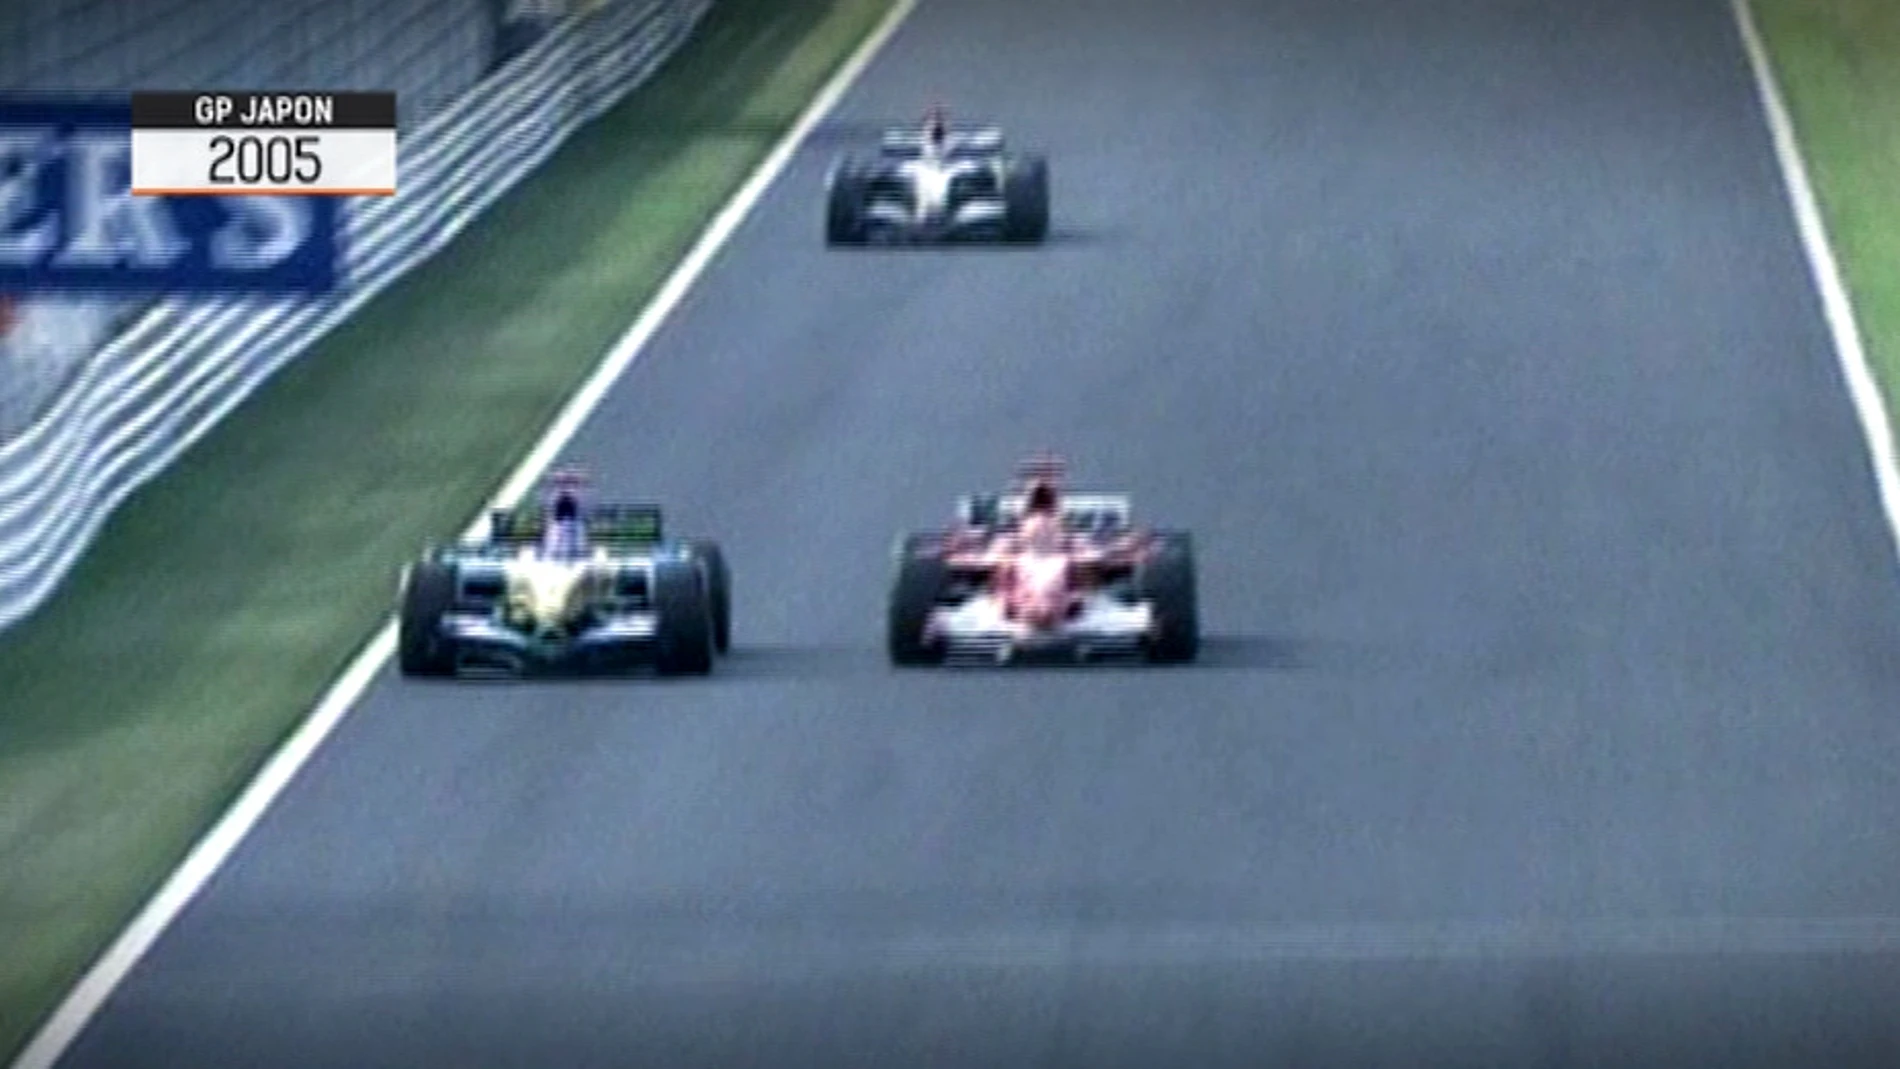 Adelantamiento de Alonso a Schumacher en la 130R